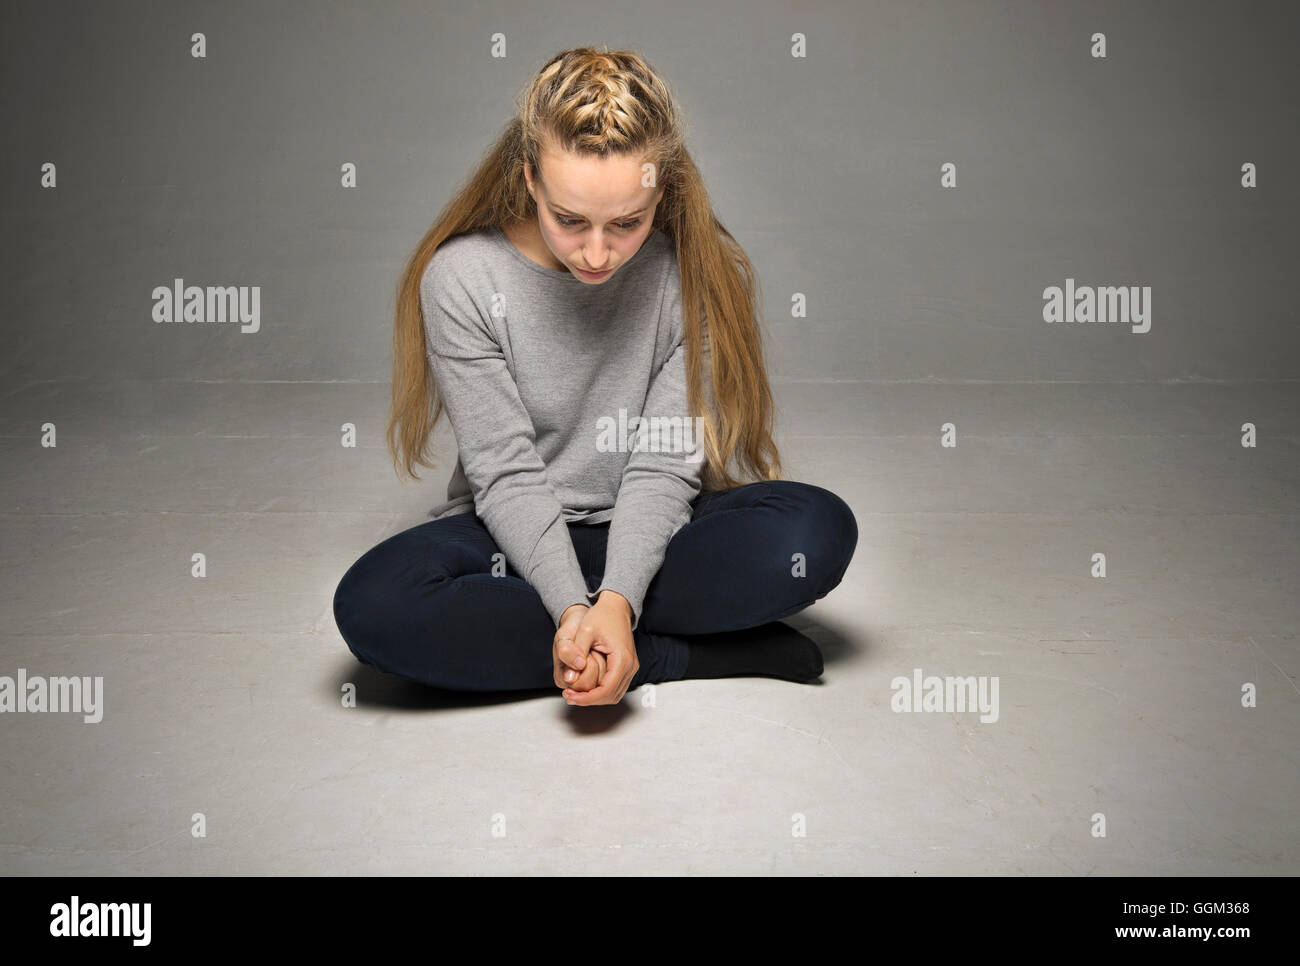 Traurige junge Frau sitzt im leeren Raum am Boden Beine gekreuzt Händen fest umklammert vorne nach unten Stockfoto